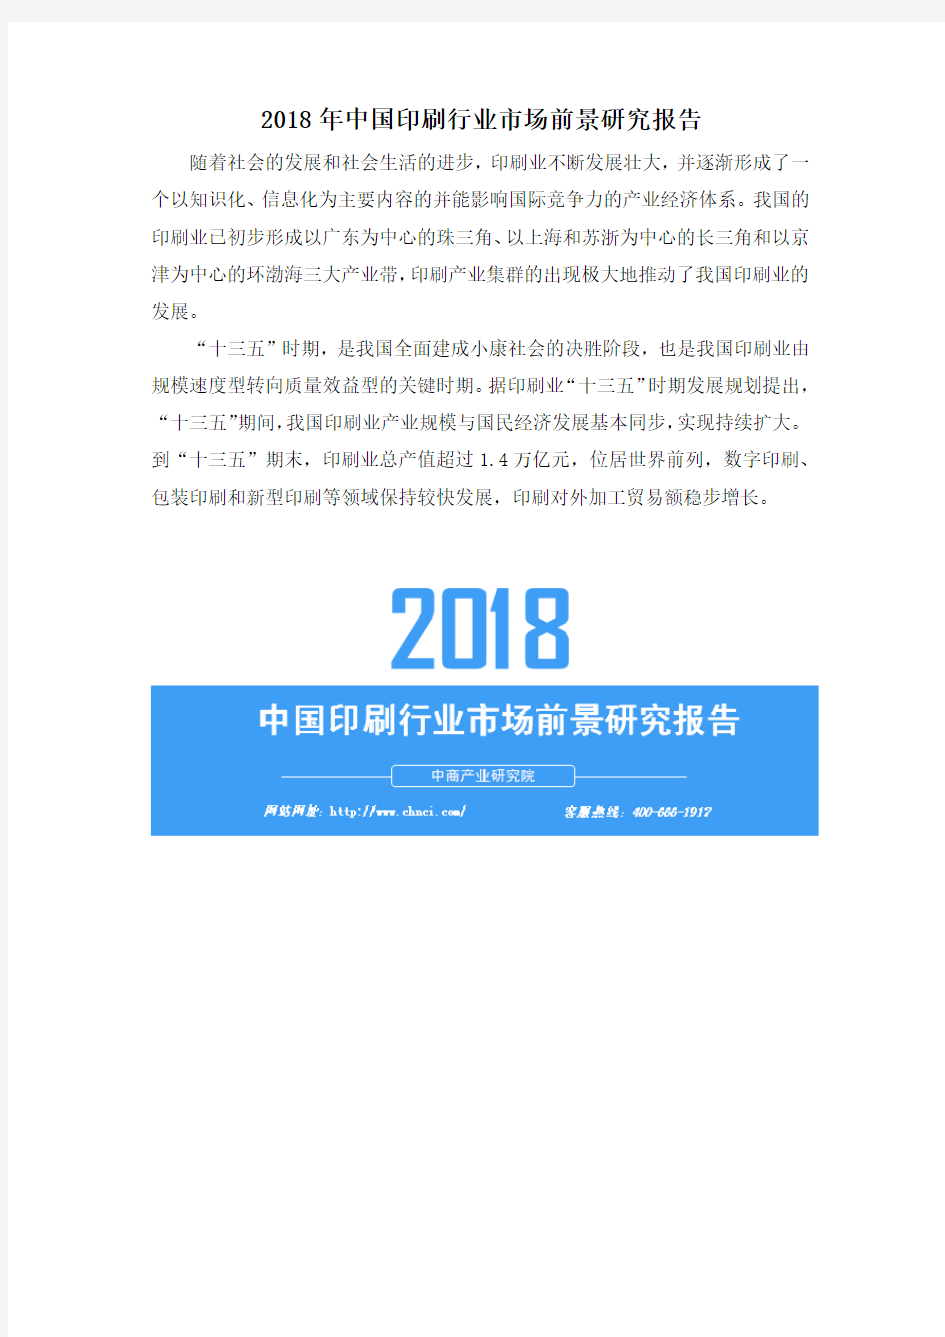 2018年中国印刷行业市场前景研究报告